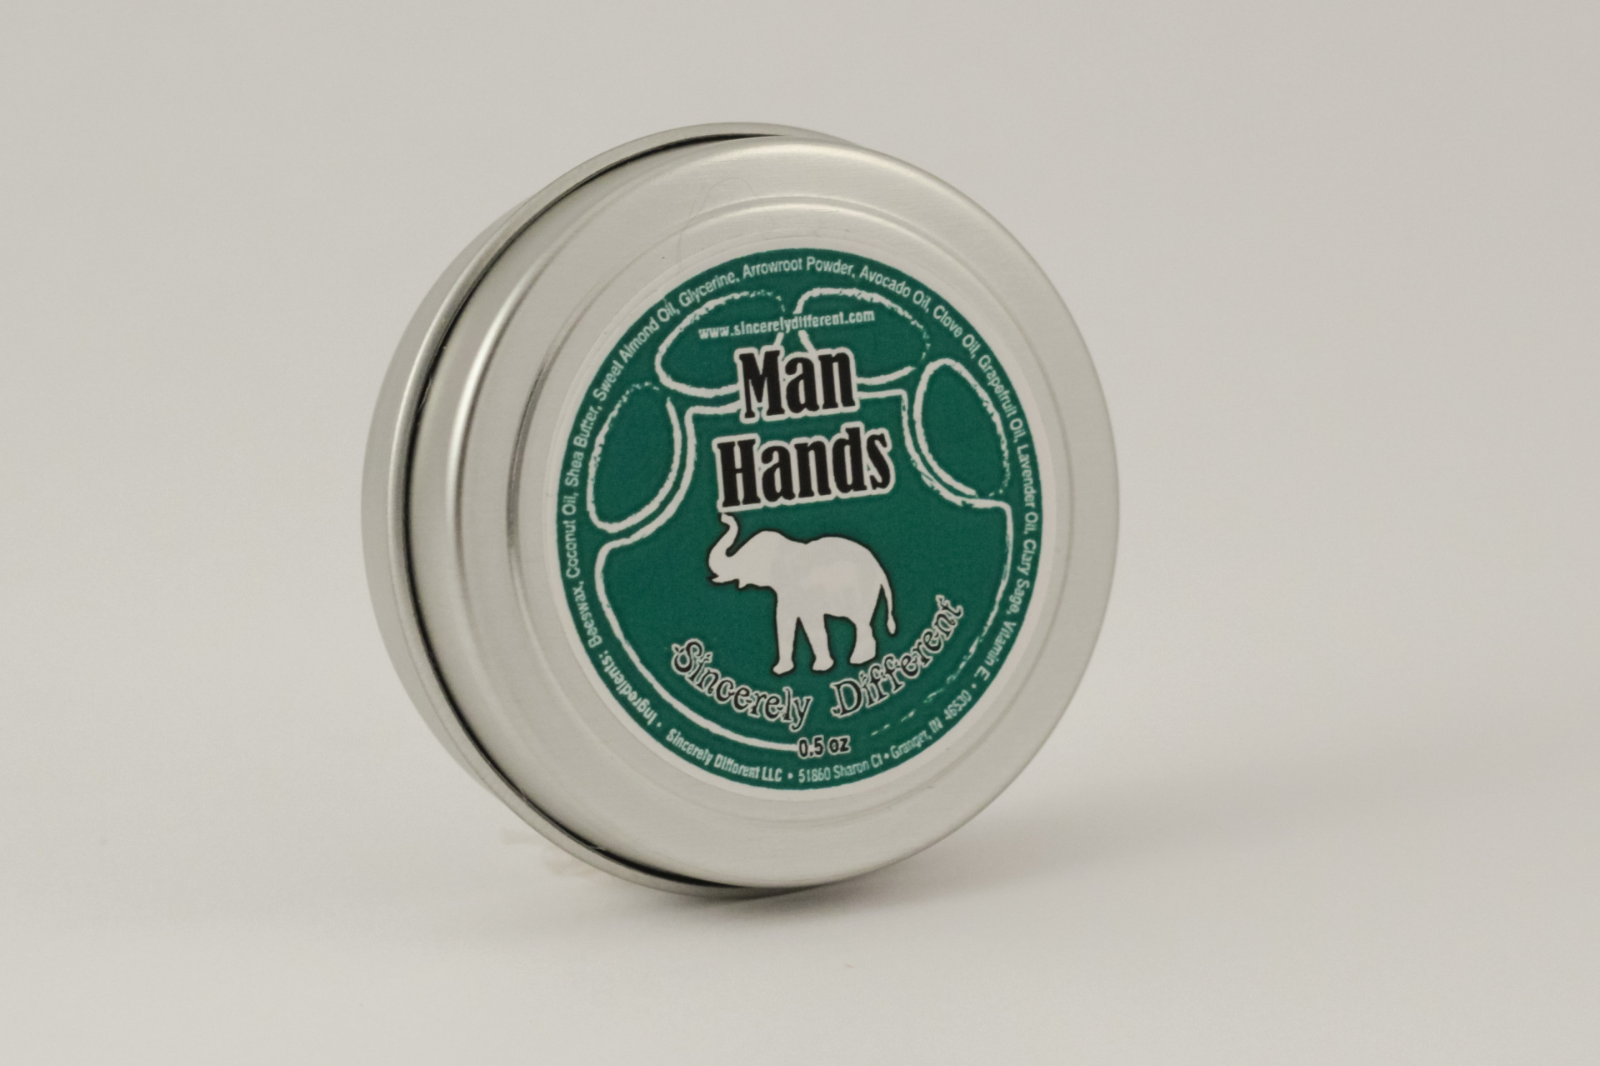 man-hands-salve-05-oz-tin